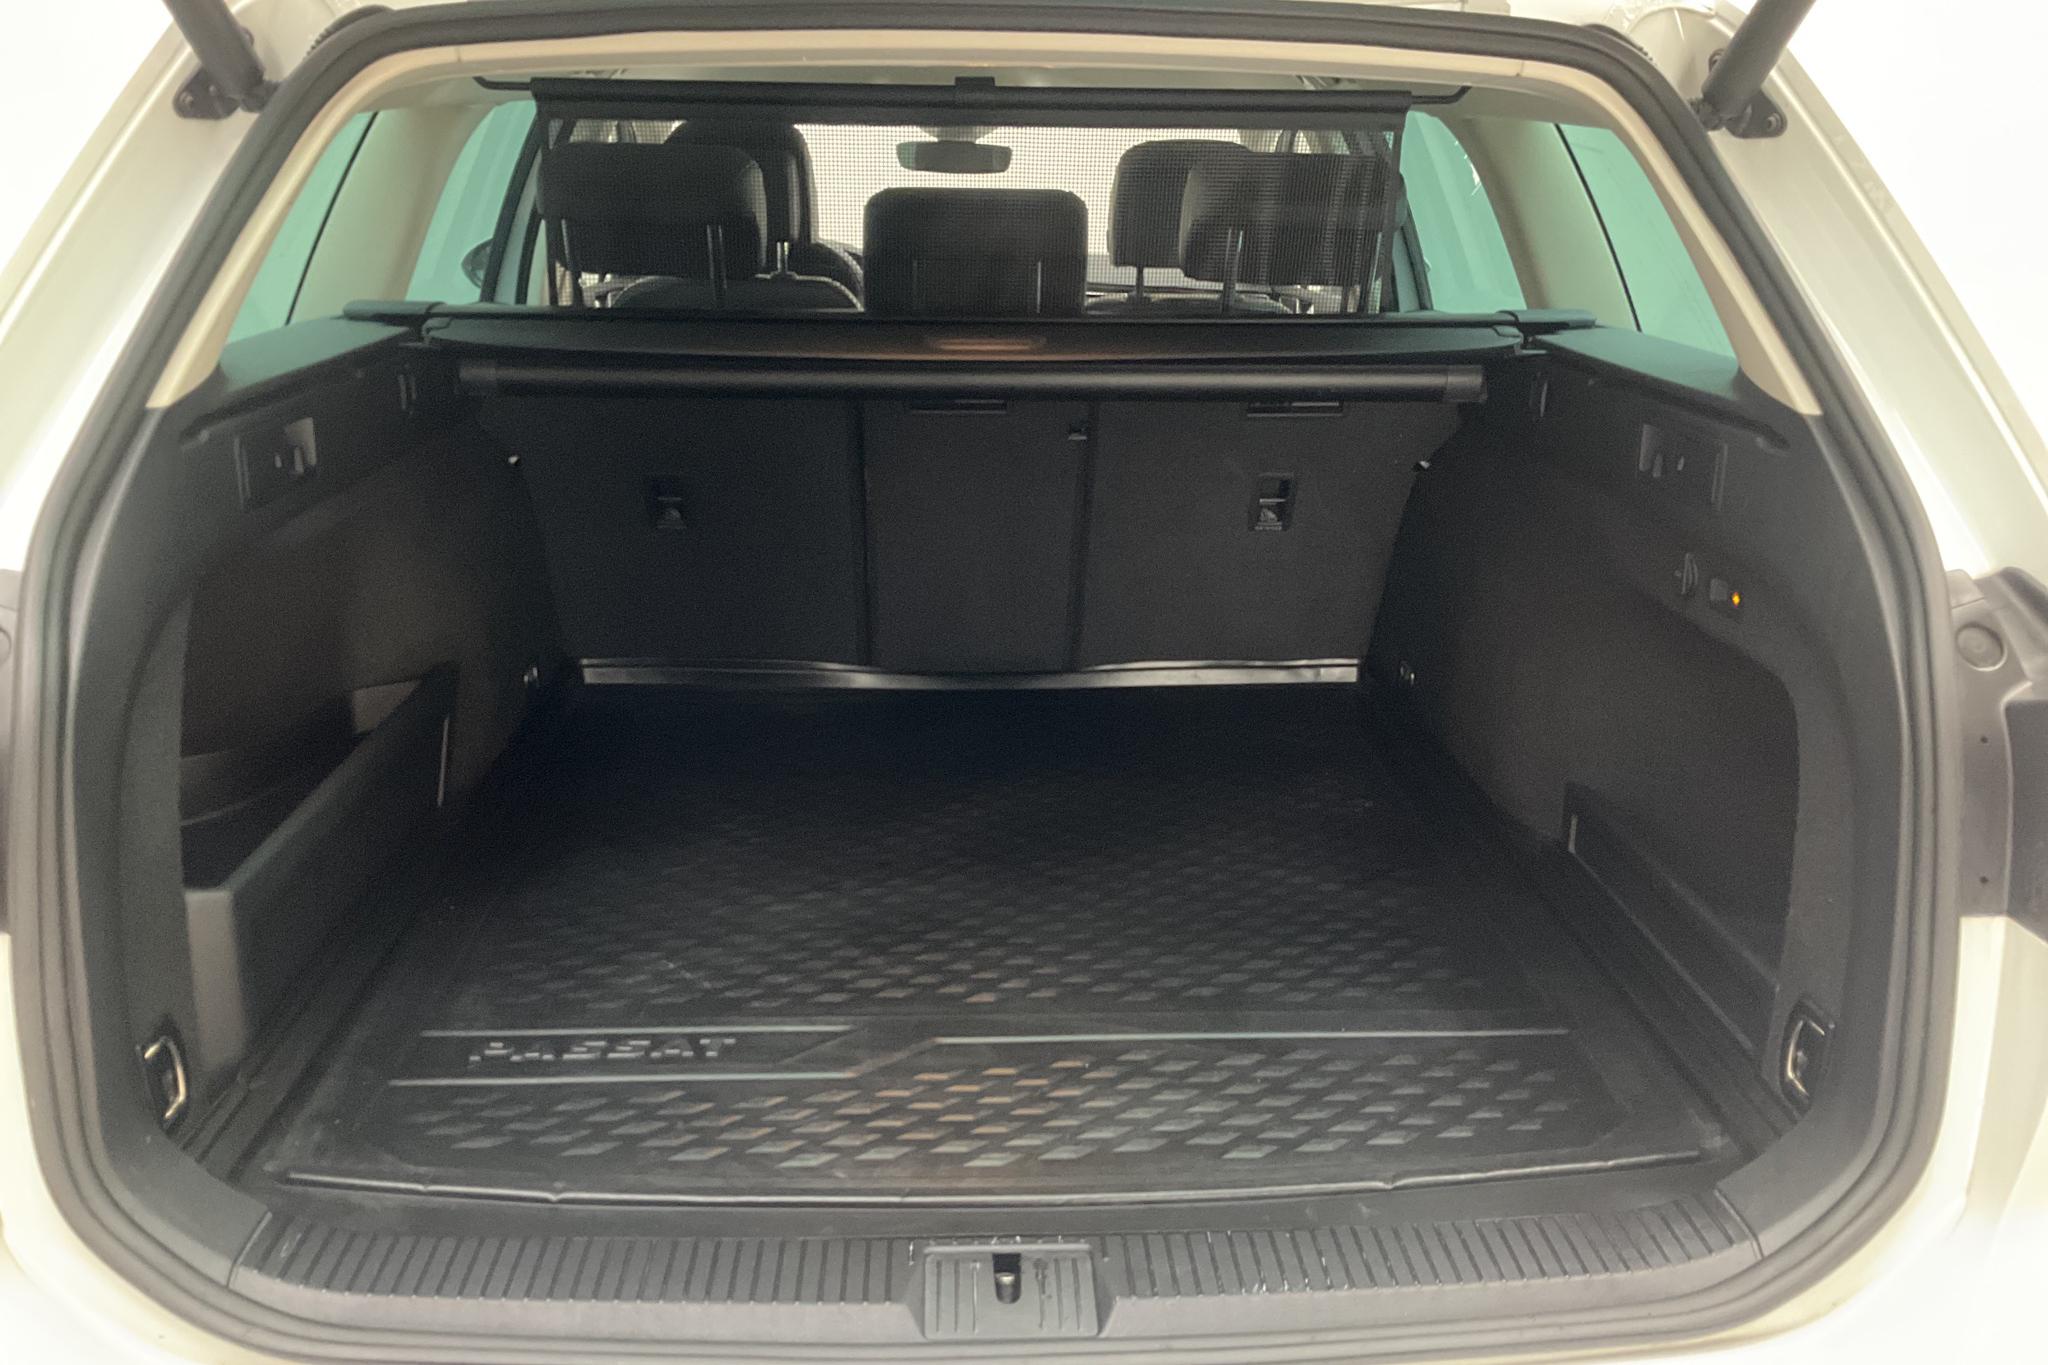 VW Passat 2.0 TDI Sportscombi 4MOTION (190hk) - 16 206 mil - Automat - vit - 2018